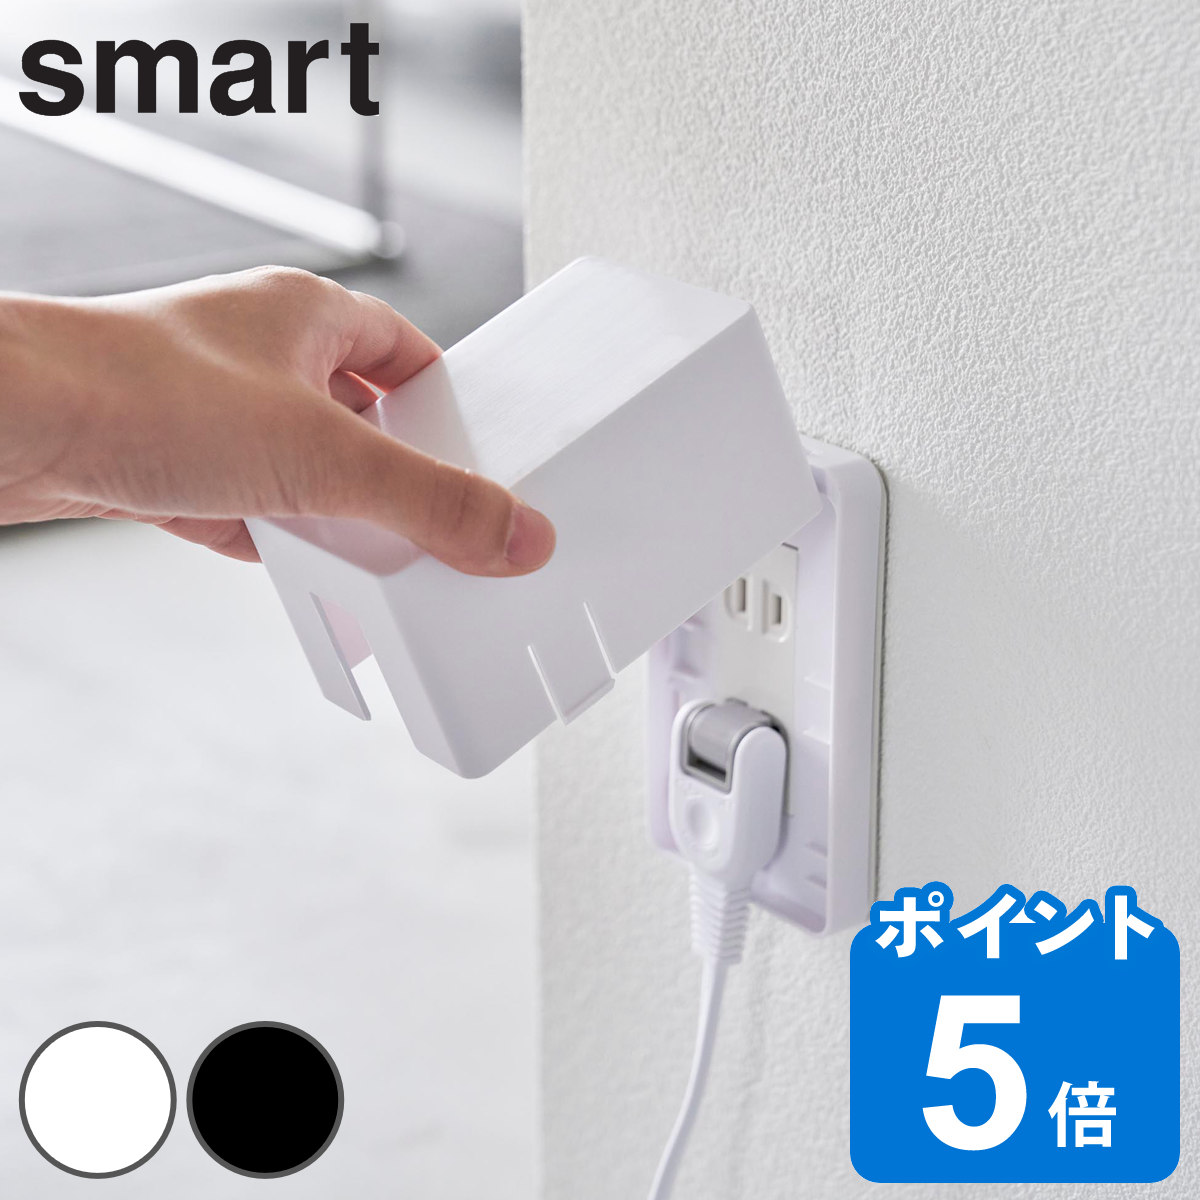  Yamazaki реальный индустрия smart розетка защита Smart ( Smart серии розетка покрытие розетка место хранения )